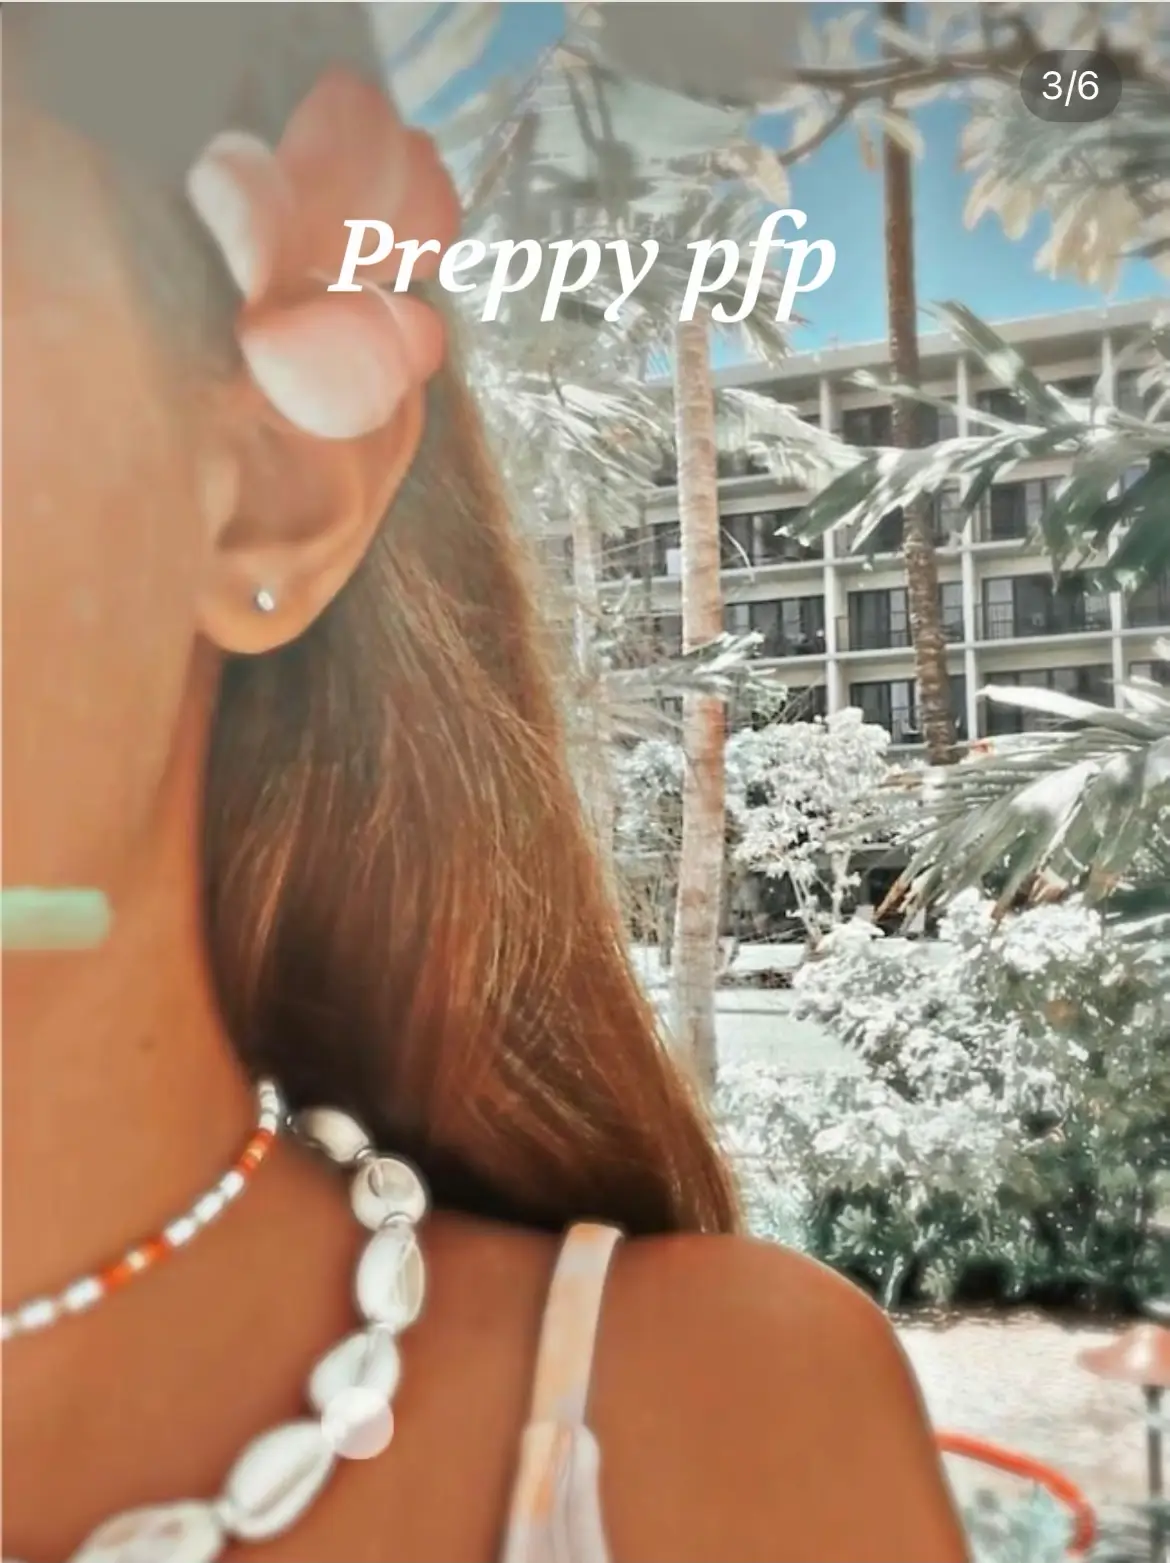 preppy pfp with preepy filter photo <3